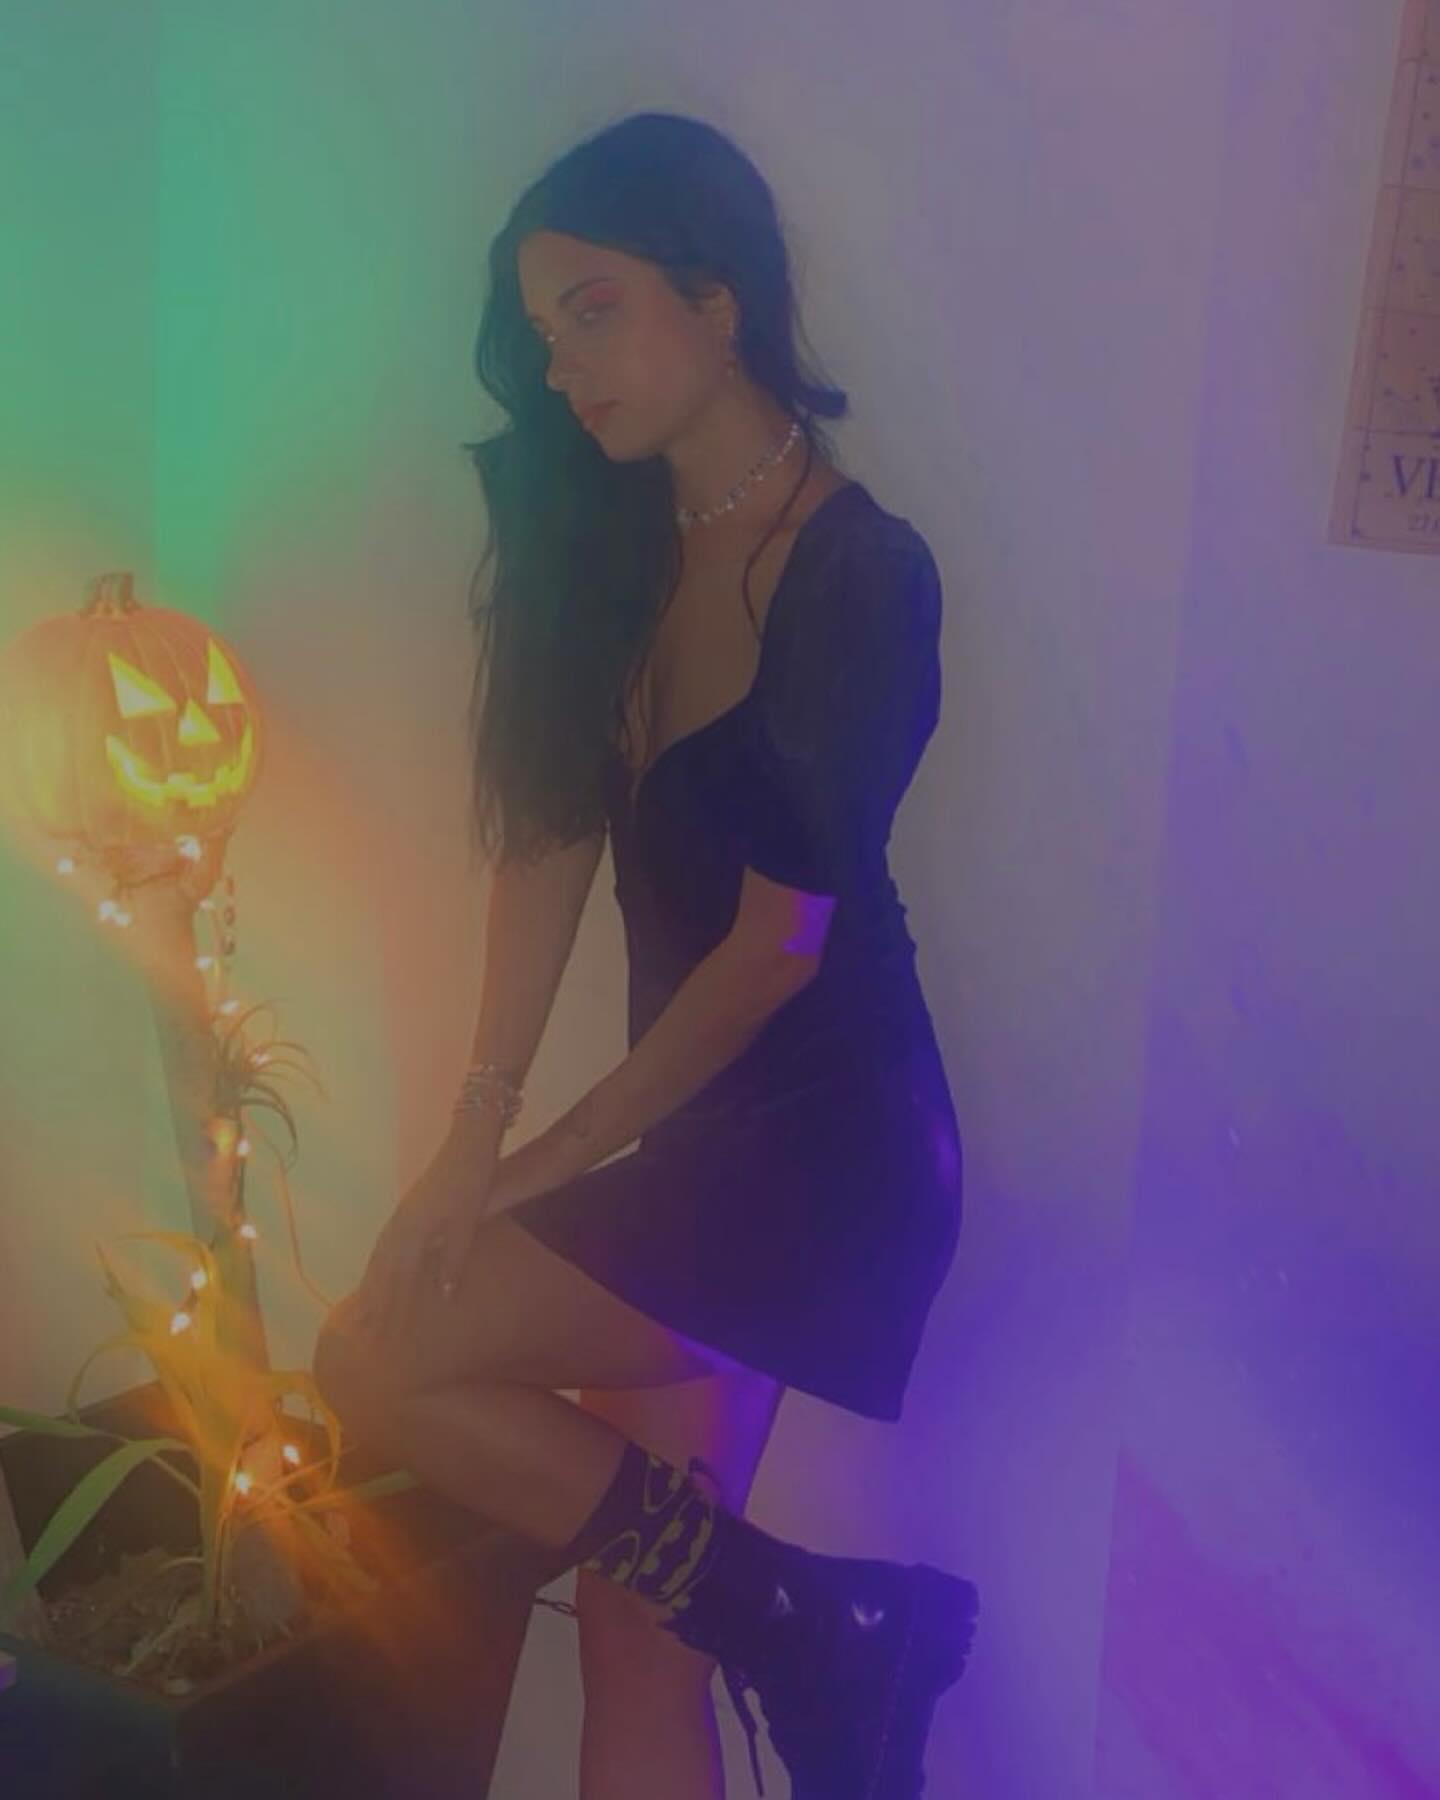 #october #fall #blackvelvet #velvet #ganjawhitenight #model #spooky #pumpkin #jackolantern #purple #green #orange #drmartens #forloveandlemons #onlyfansmodel #brunette #girl #woman #onlyfans